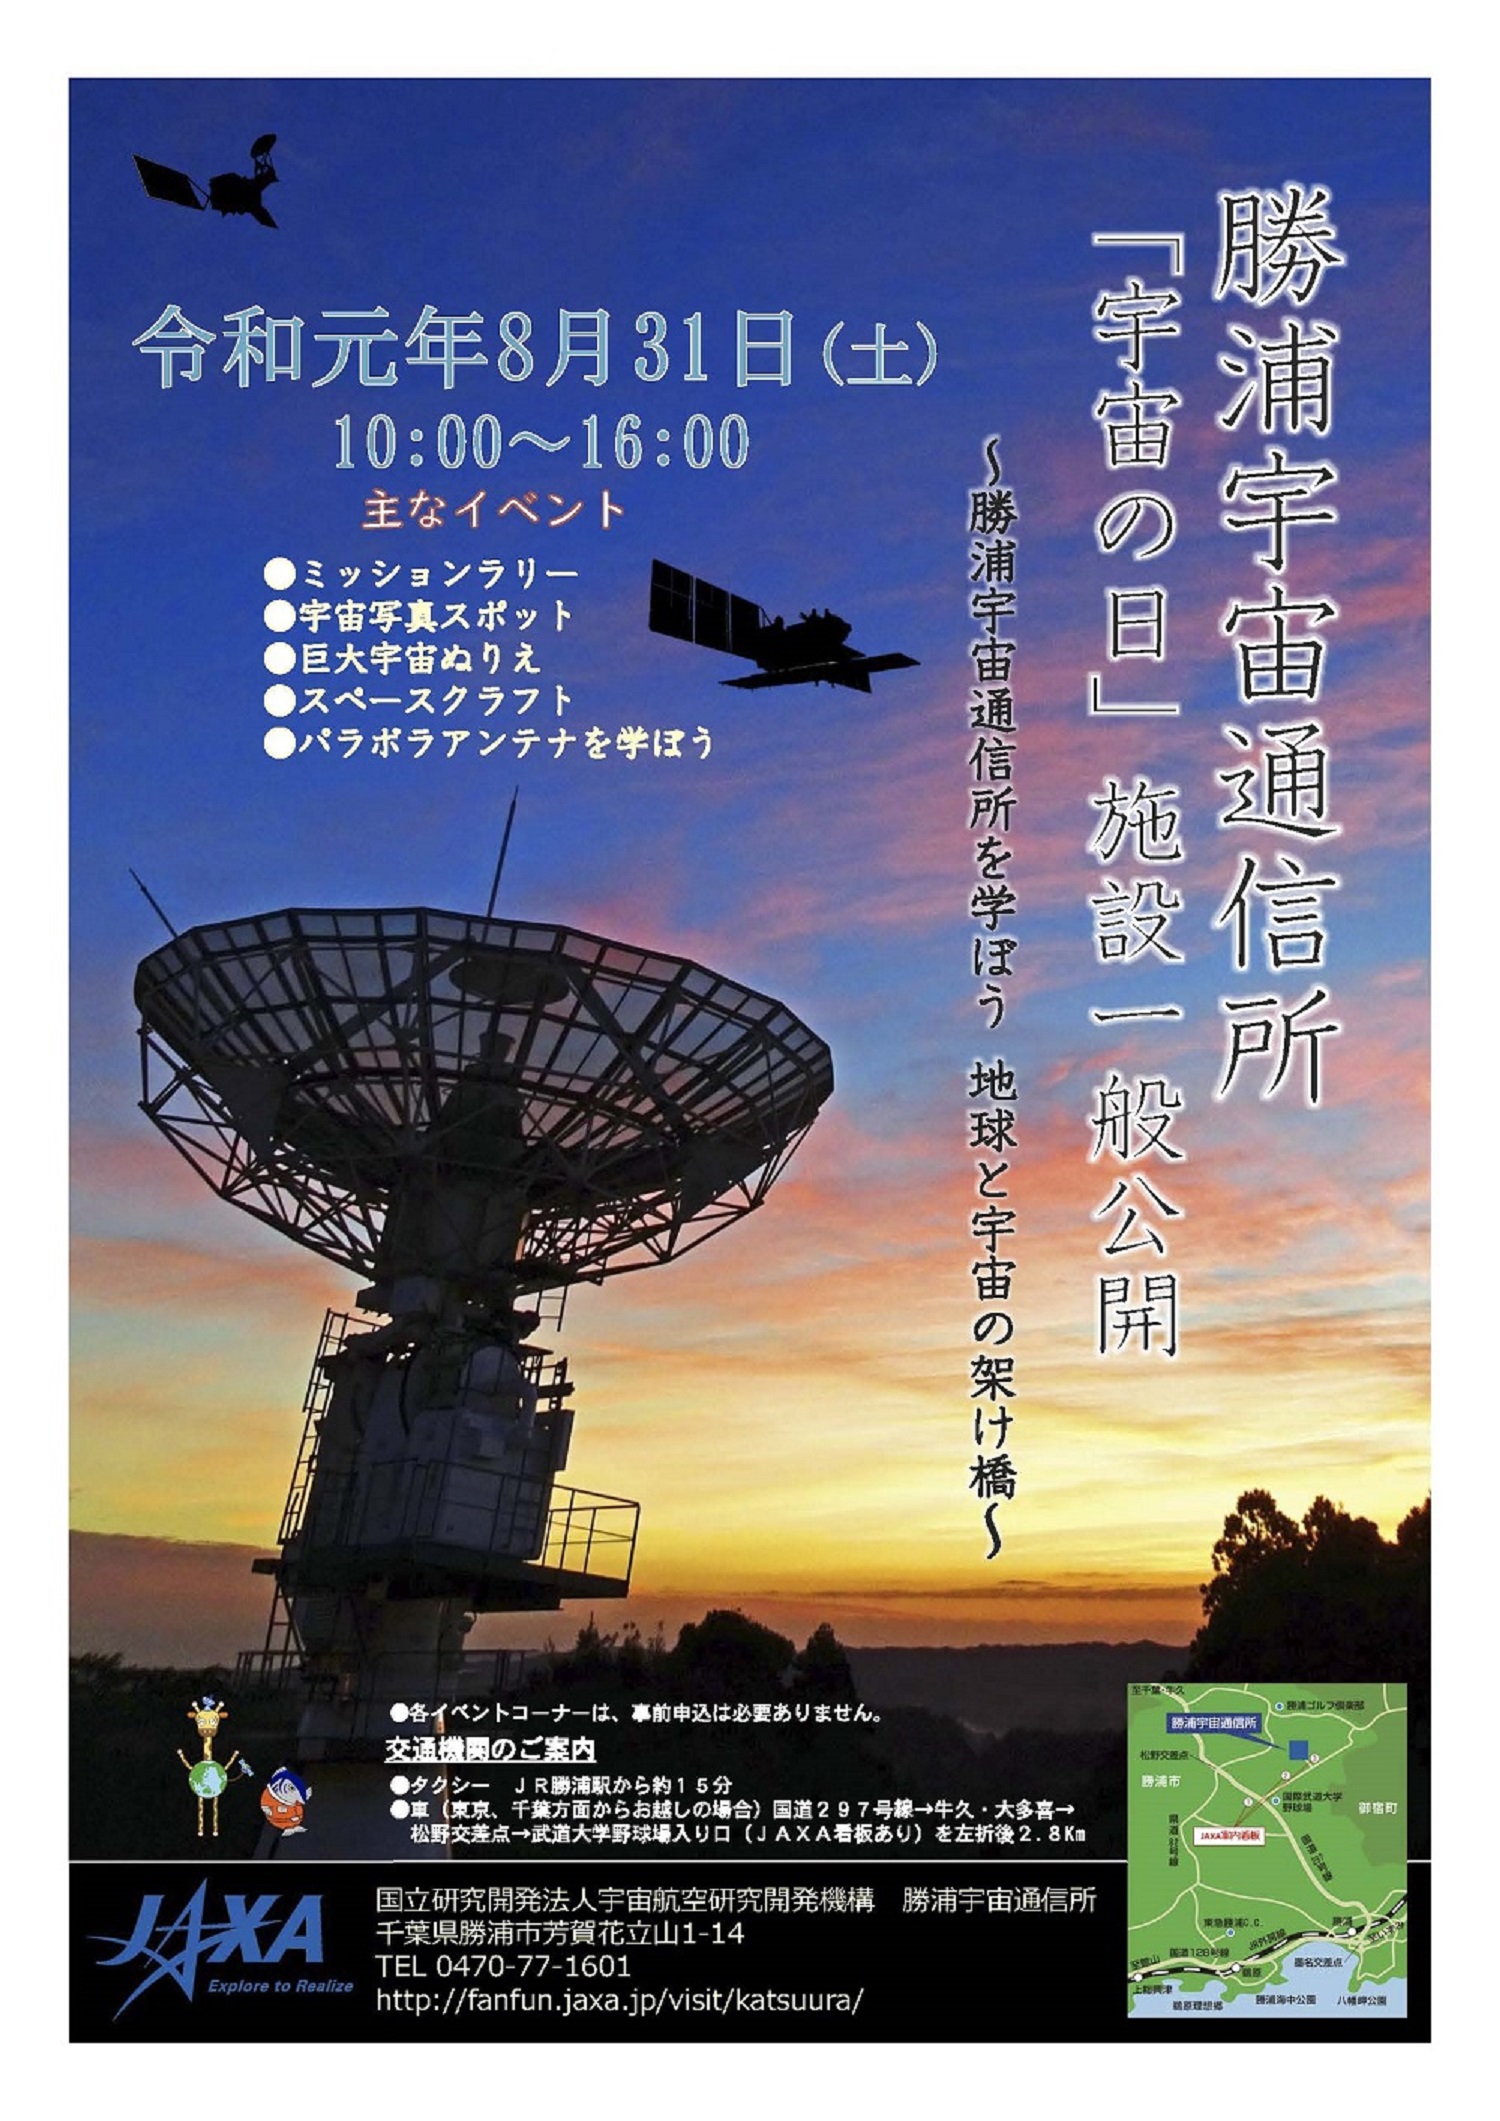 勝浦宇宙通信所 施設一般公開のお知らせ